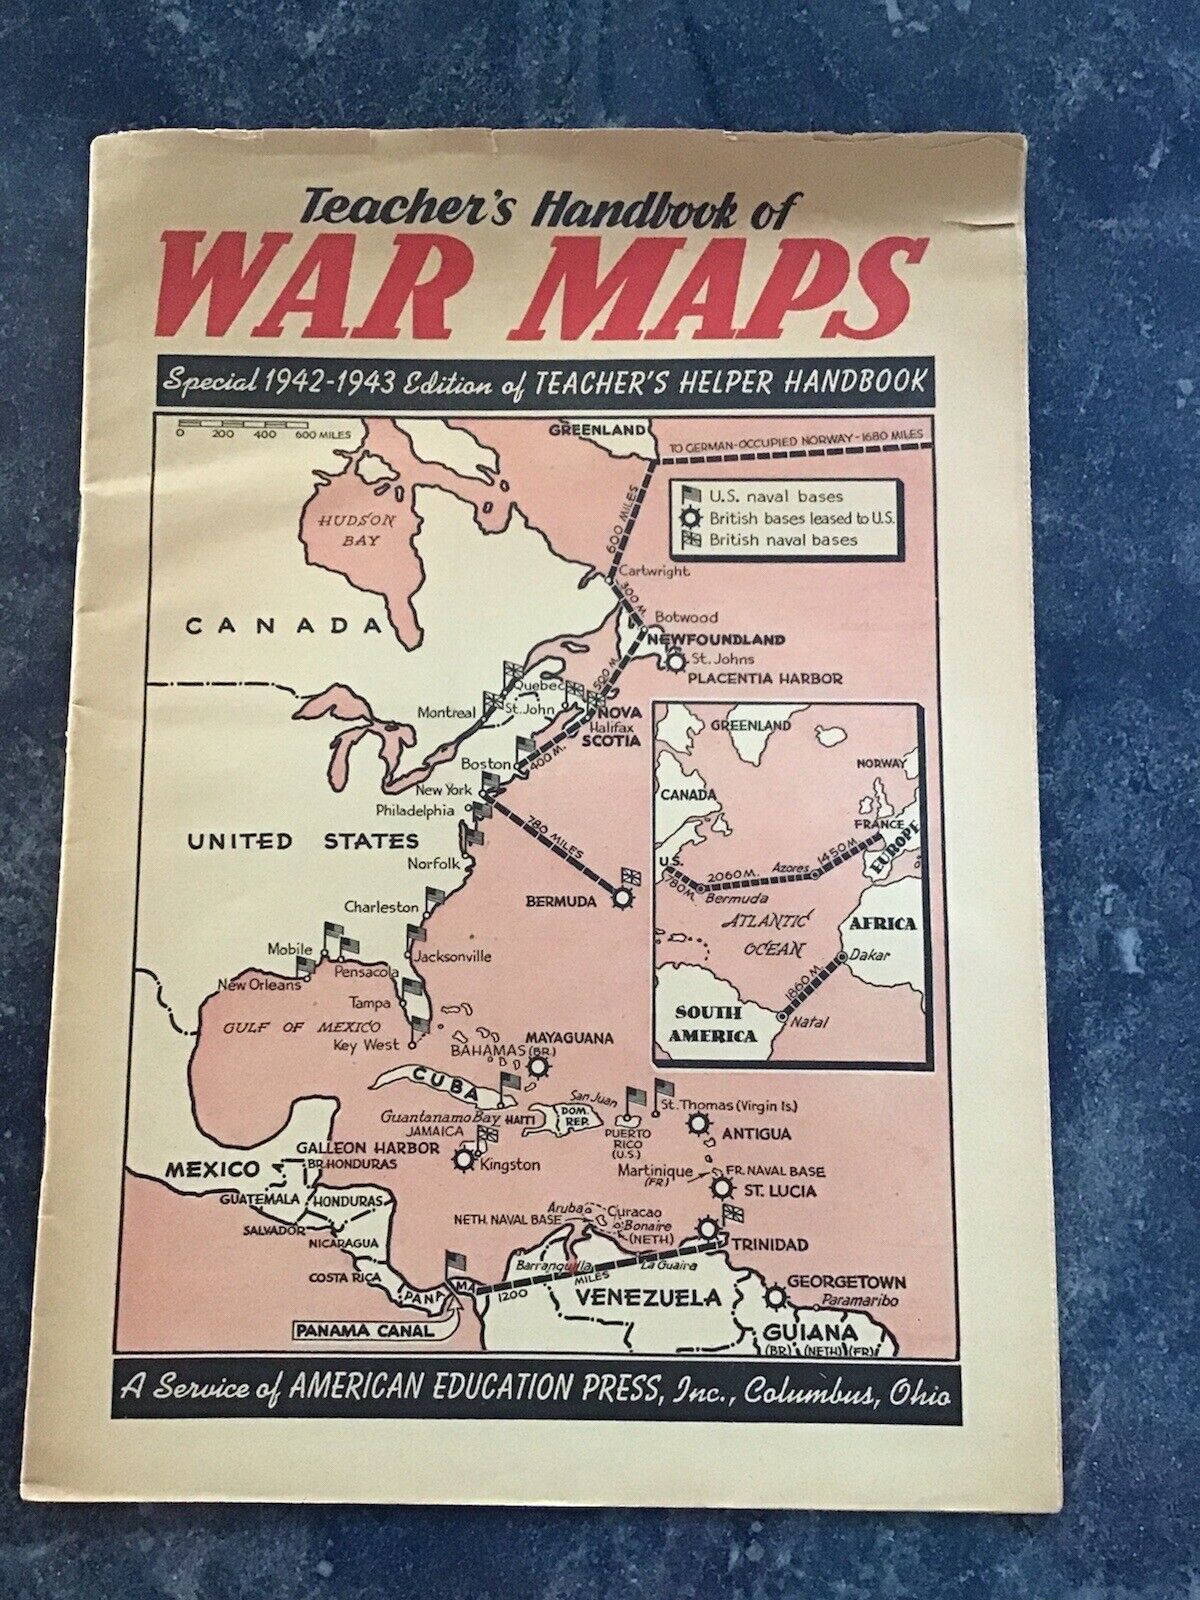 1942-1943 Special Edition “Teacher’s Handbook Of WAR MAPS”